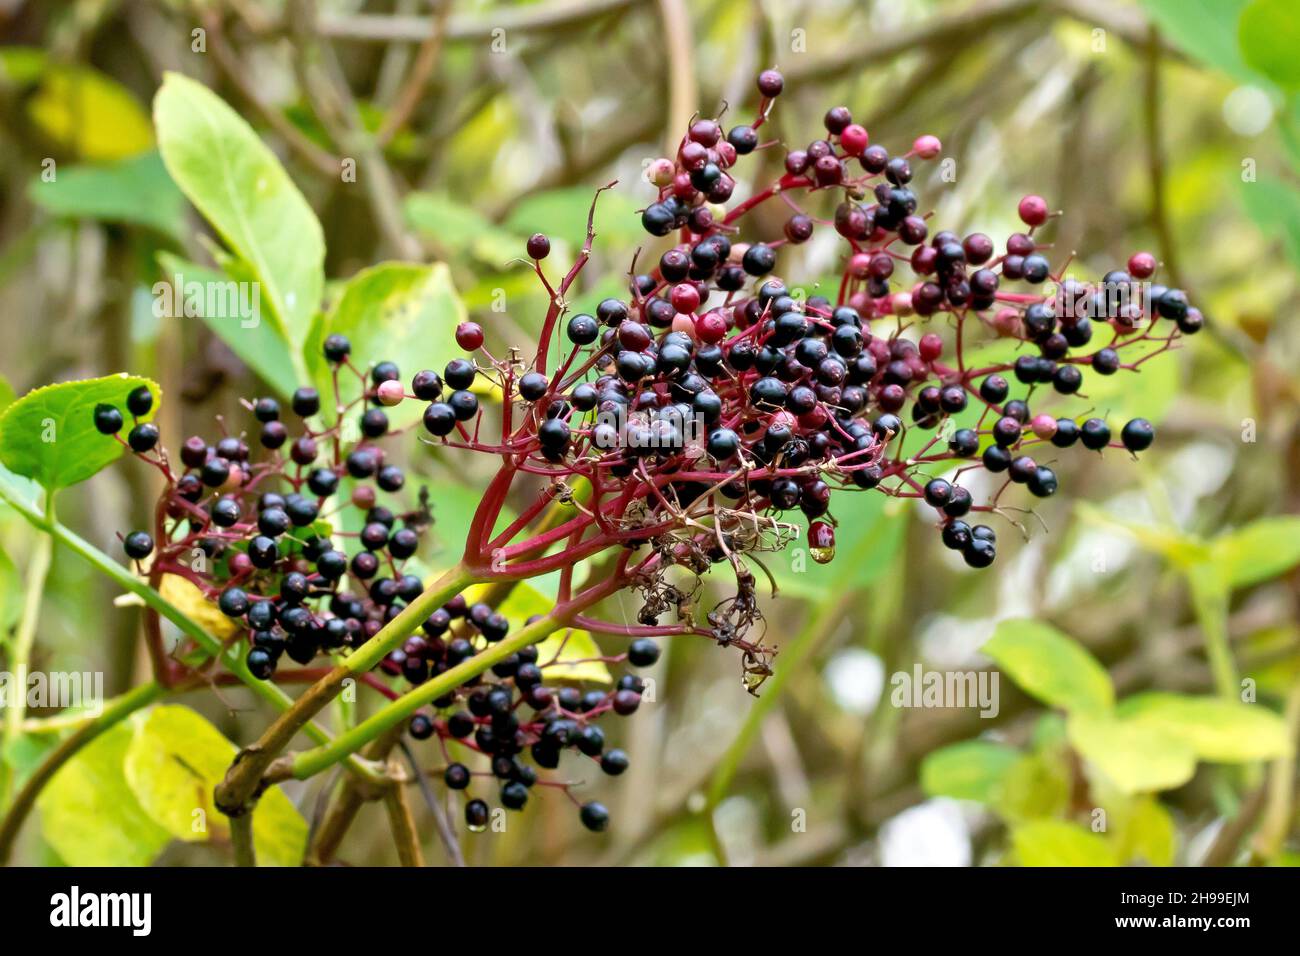 Holunder, Holunderblüte oder Holunderbeere (sambucus nigra), Nahaufnahme der schwarzen Früchte oder Beeren, die im Frühherbst auf dem Strauch erscheinen. Stockfoto